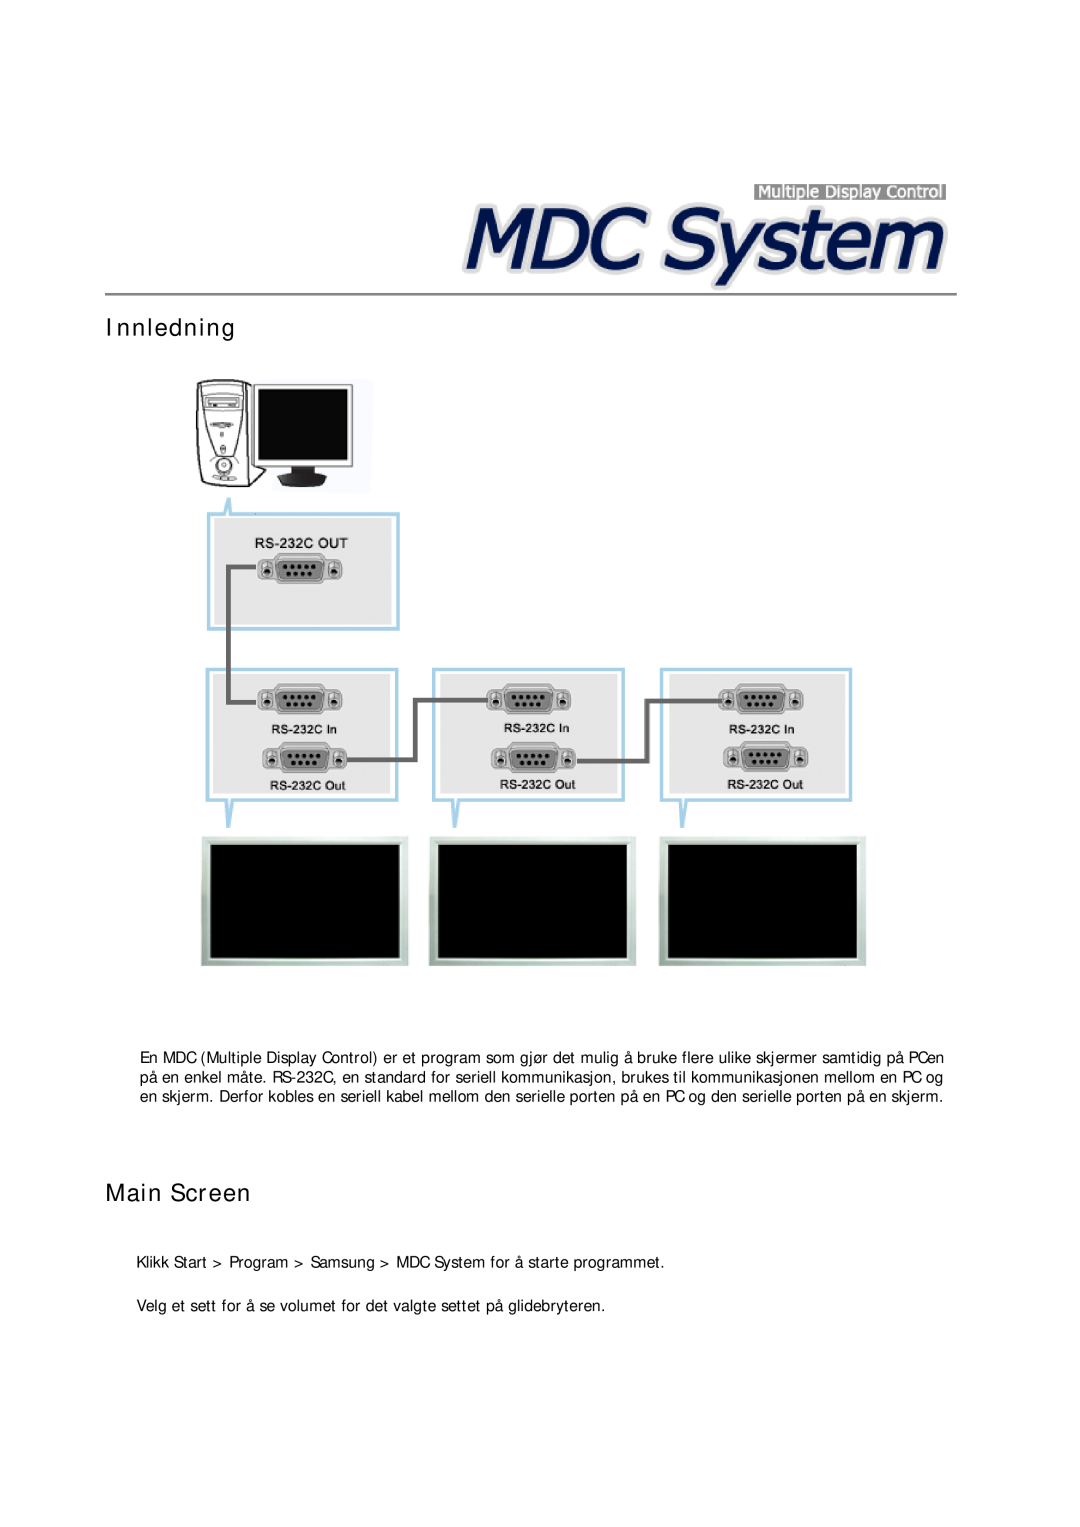 Samsung LH23PTRHBC/EN manual Innledning, Main Screen, Klikk Start Program Samsung MDC System for å starte programmet 